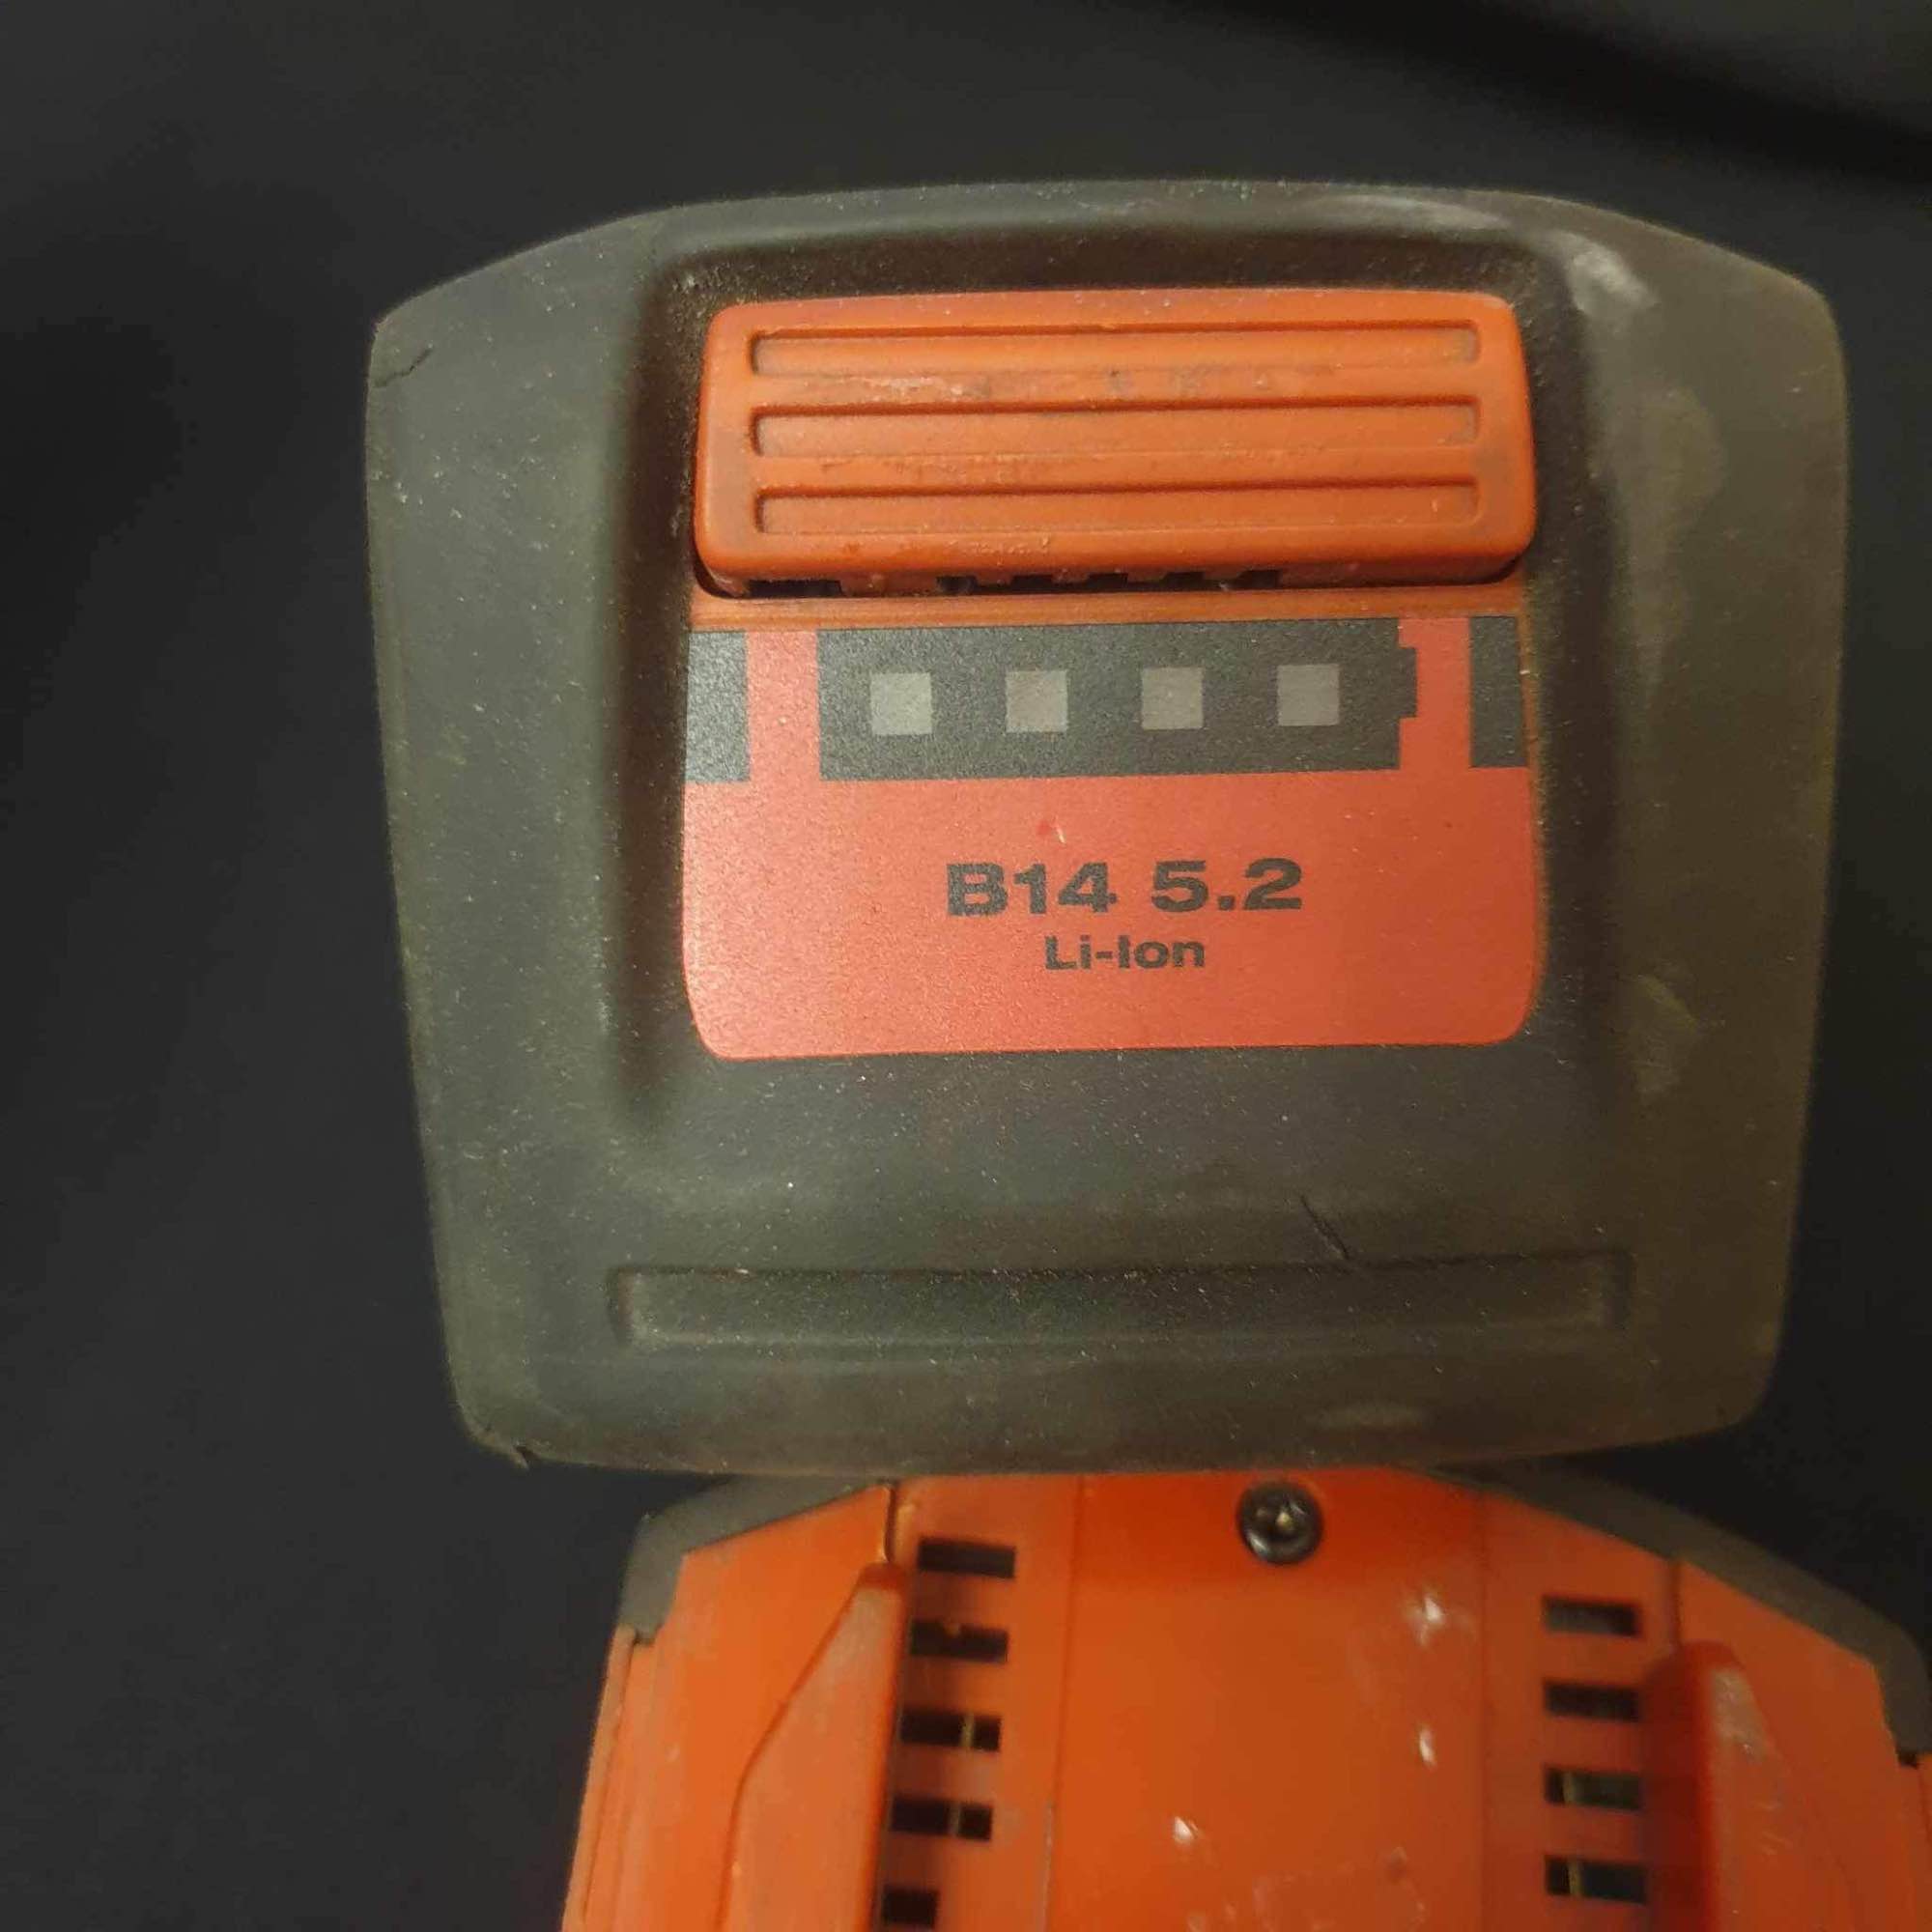 Hilti bateria akumulator B14 5.2 Fabryczna - zdjęcie 1